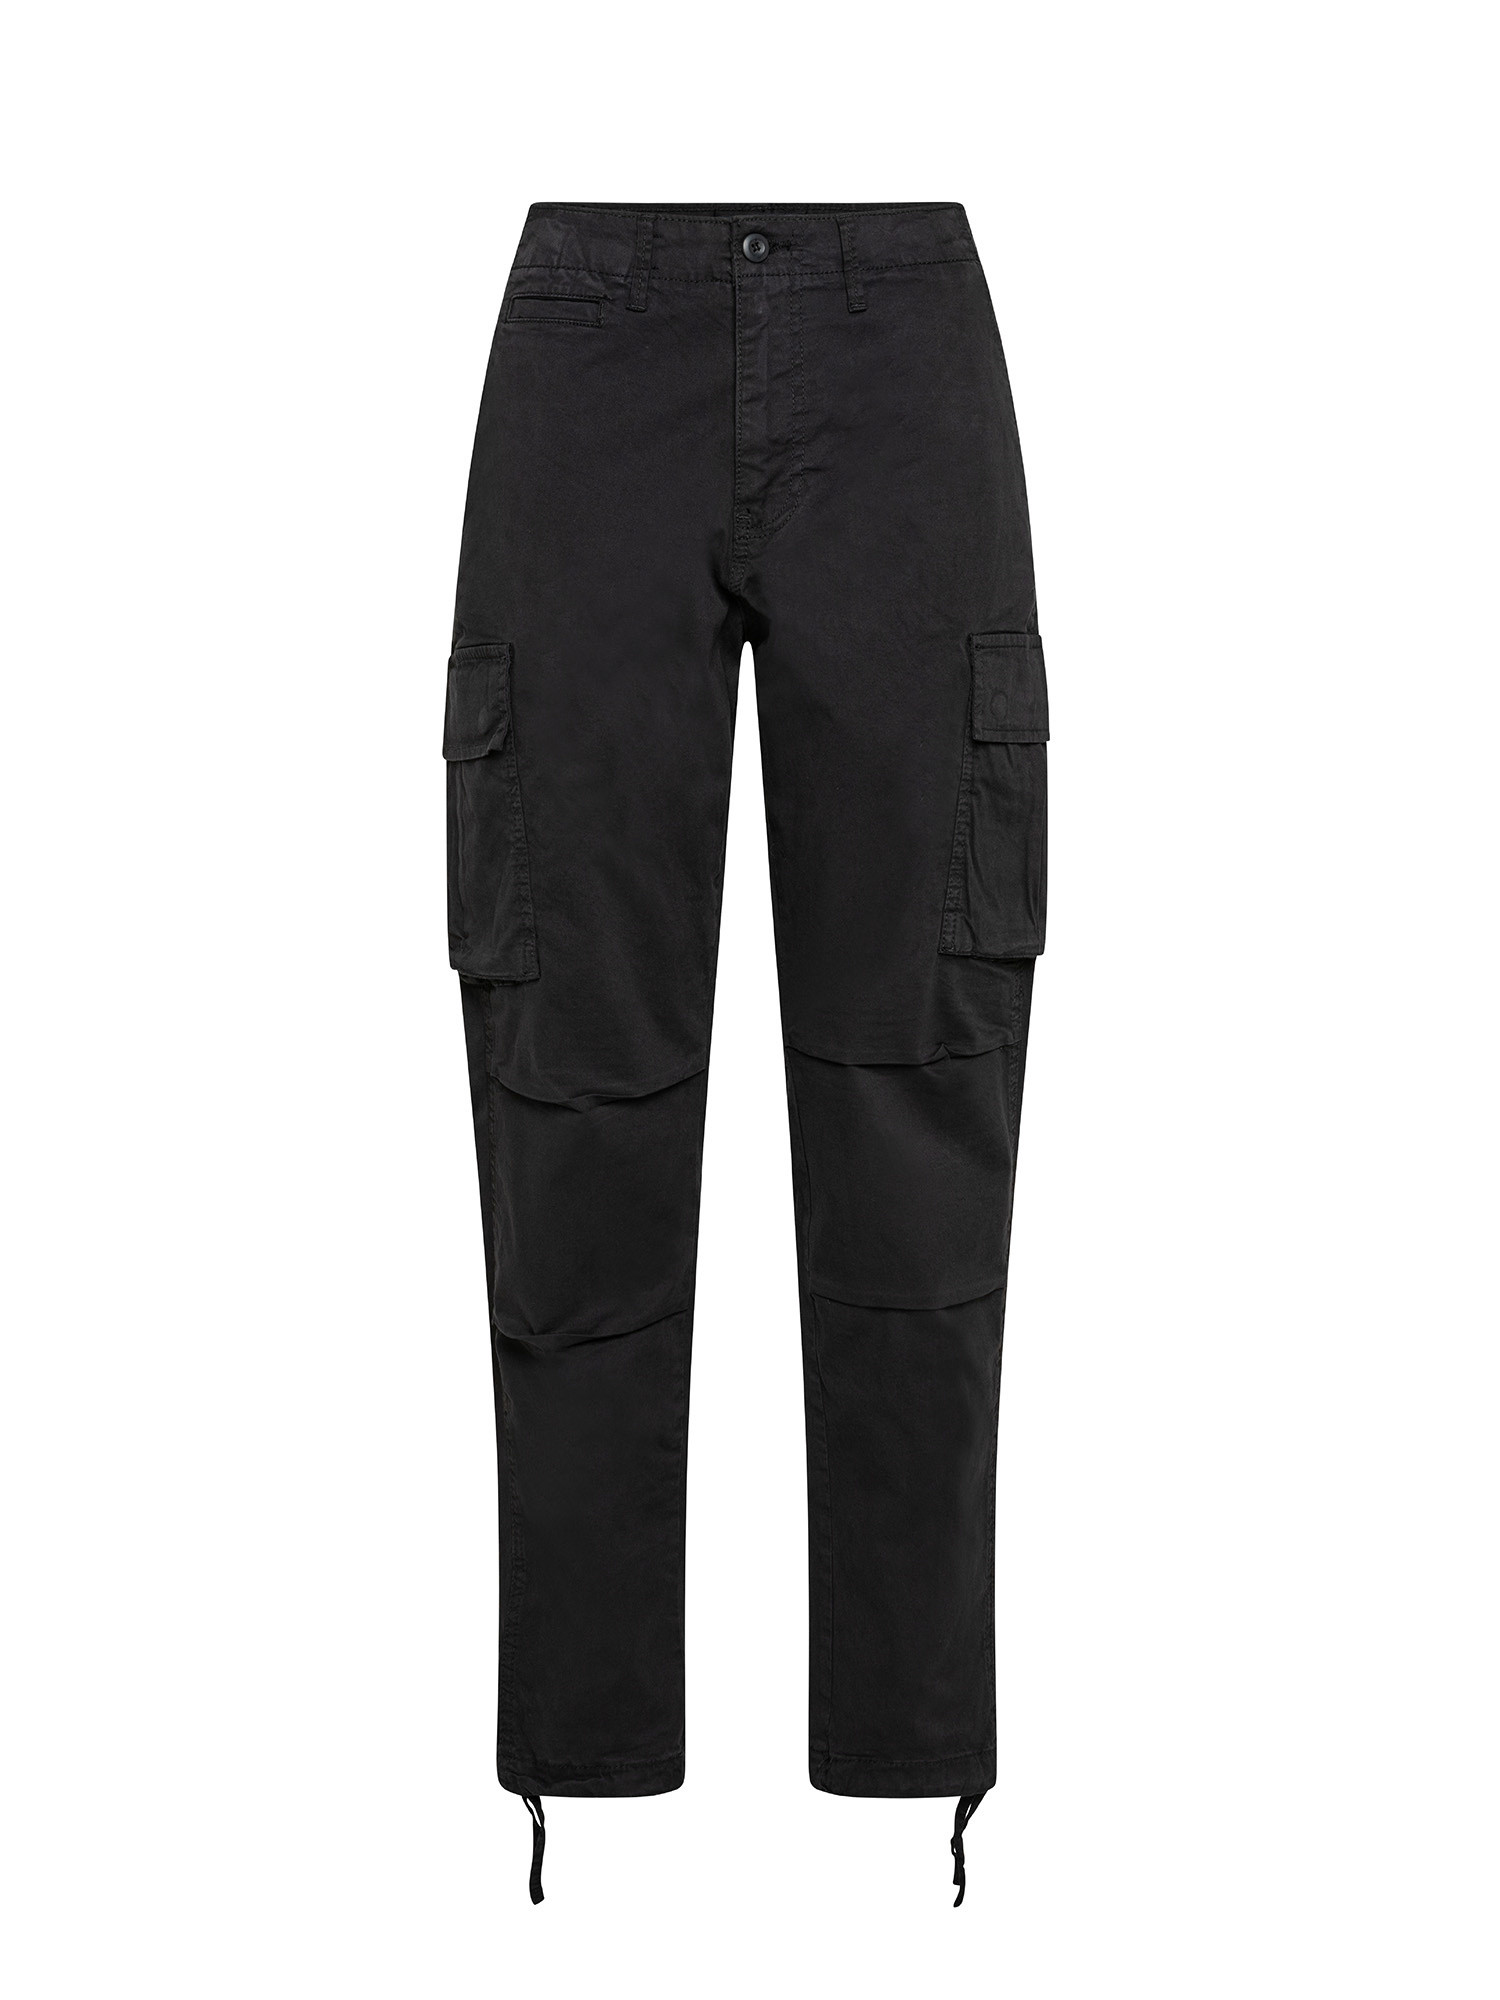 Pantaloni cargo con tasche laterali, Nero, large